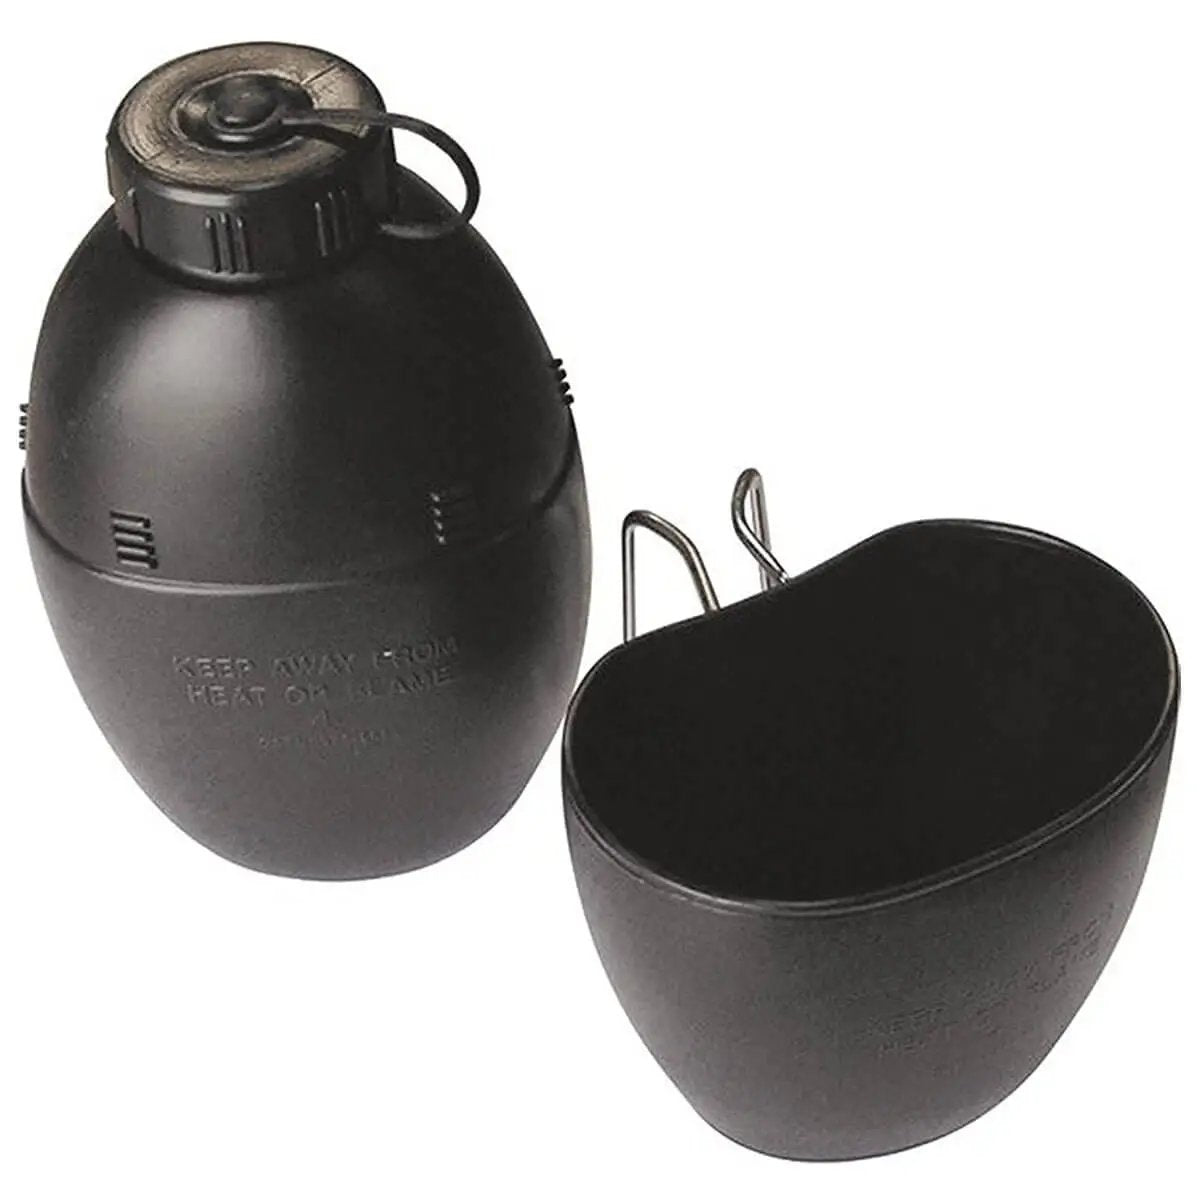 Kombat 58 Pattern Black Water Bottle and Mug Canteen - John Bull Clothing